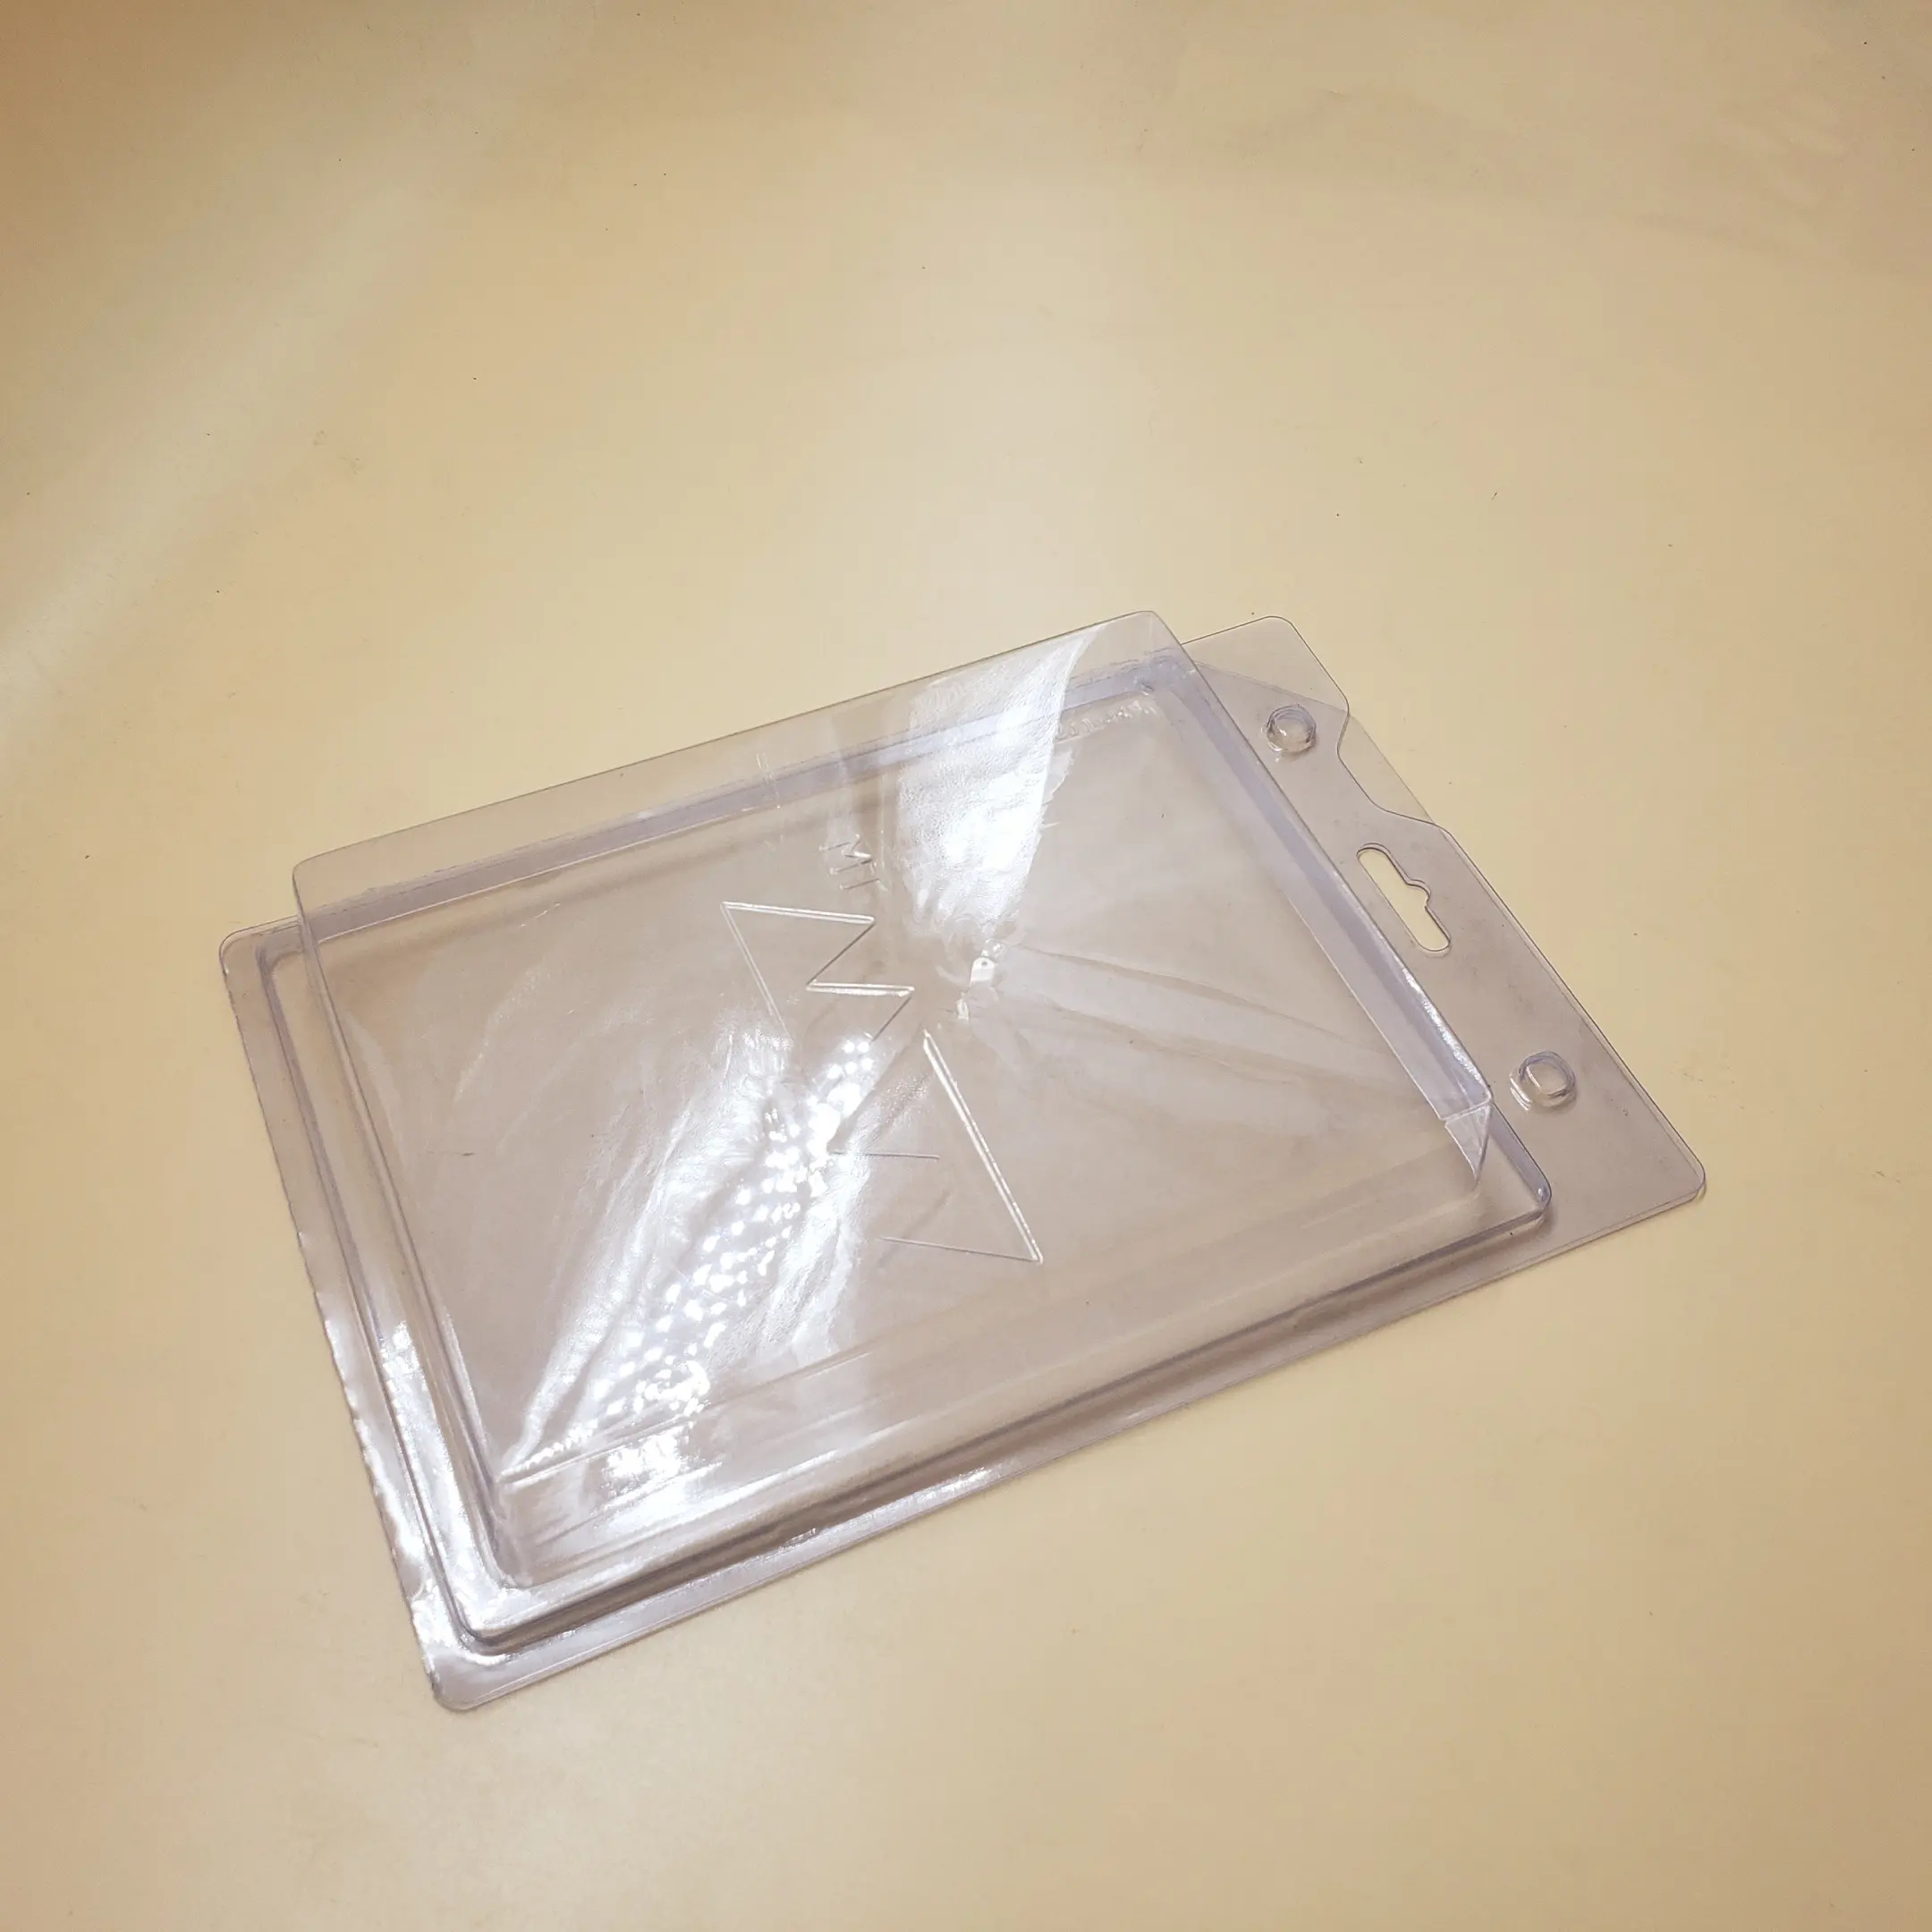 名刺透明餌包装透明長方形カスタムブリスタークラムシェル包装トレイ